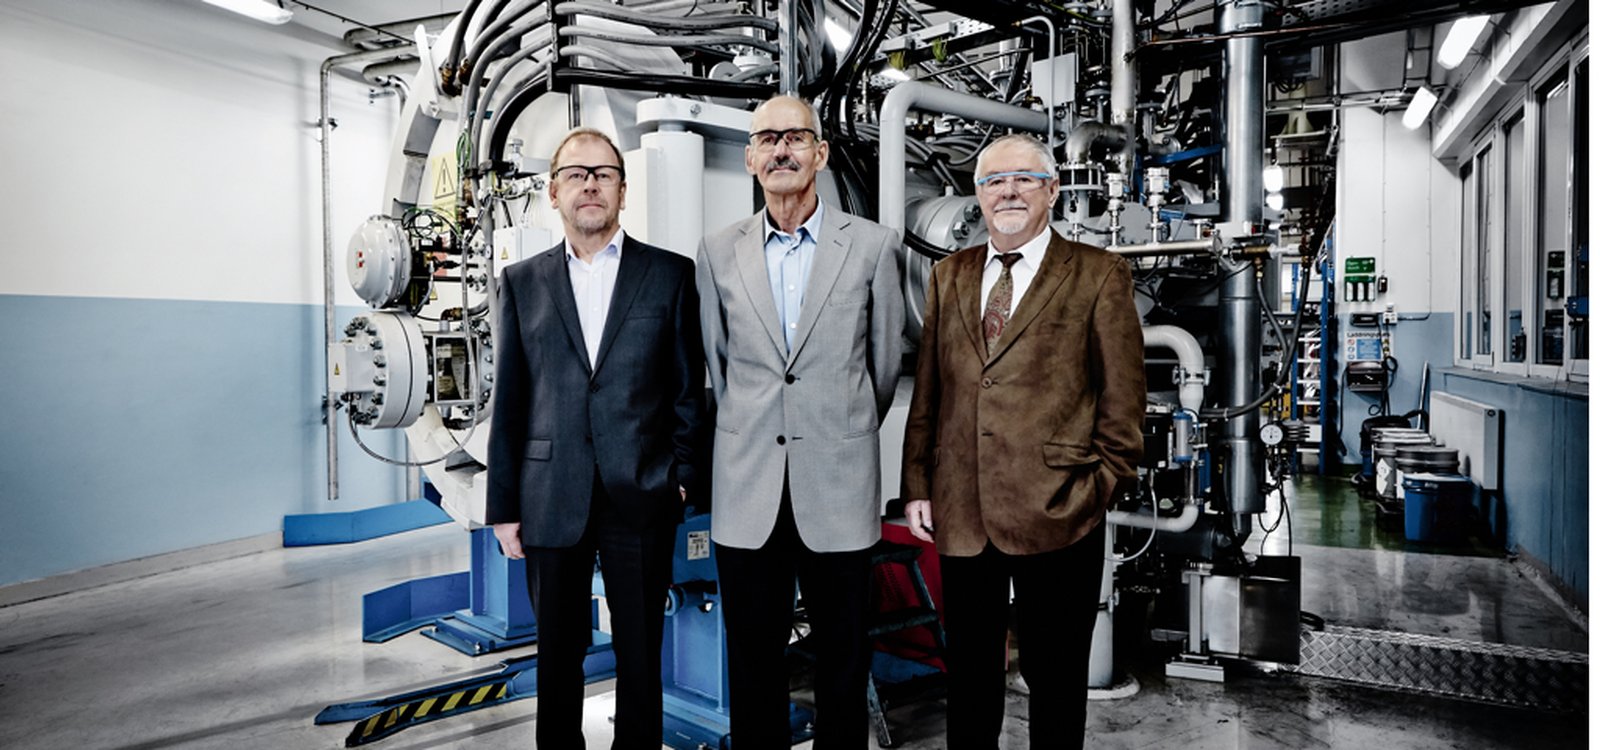 Udo Fischer, Torbjörn Hartzell et Jan Åkerman, tous trois collaborateurs de Sandvik Mining, ont récemment été intronisés à l’International Mining Technology Hall of Fame dans la catégorie Développement souterrain.